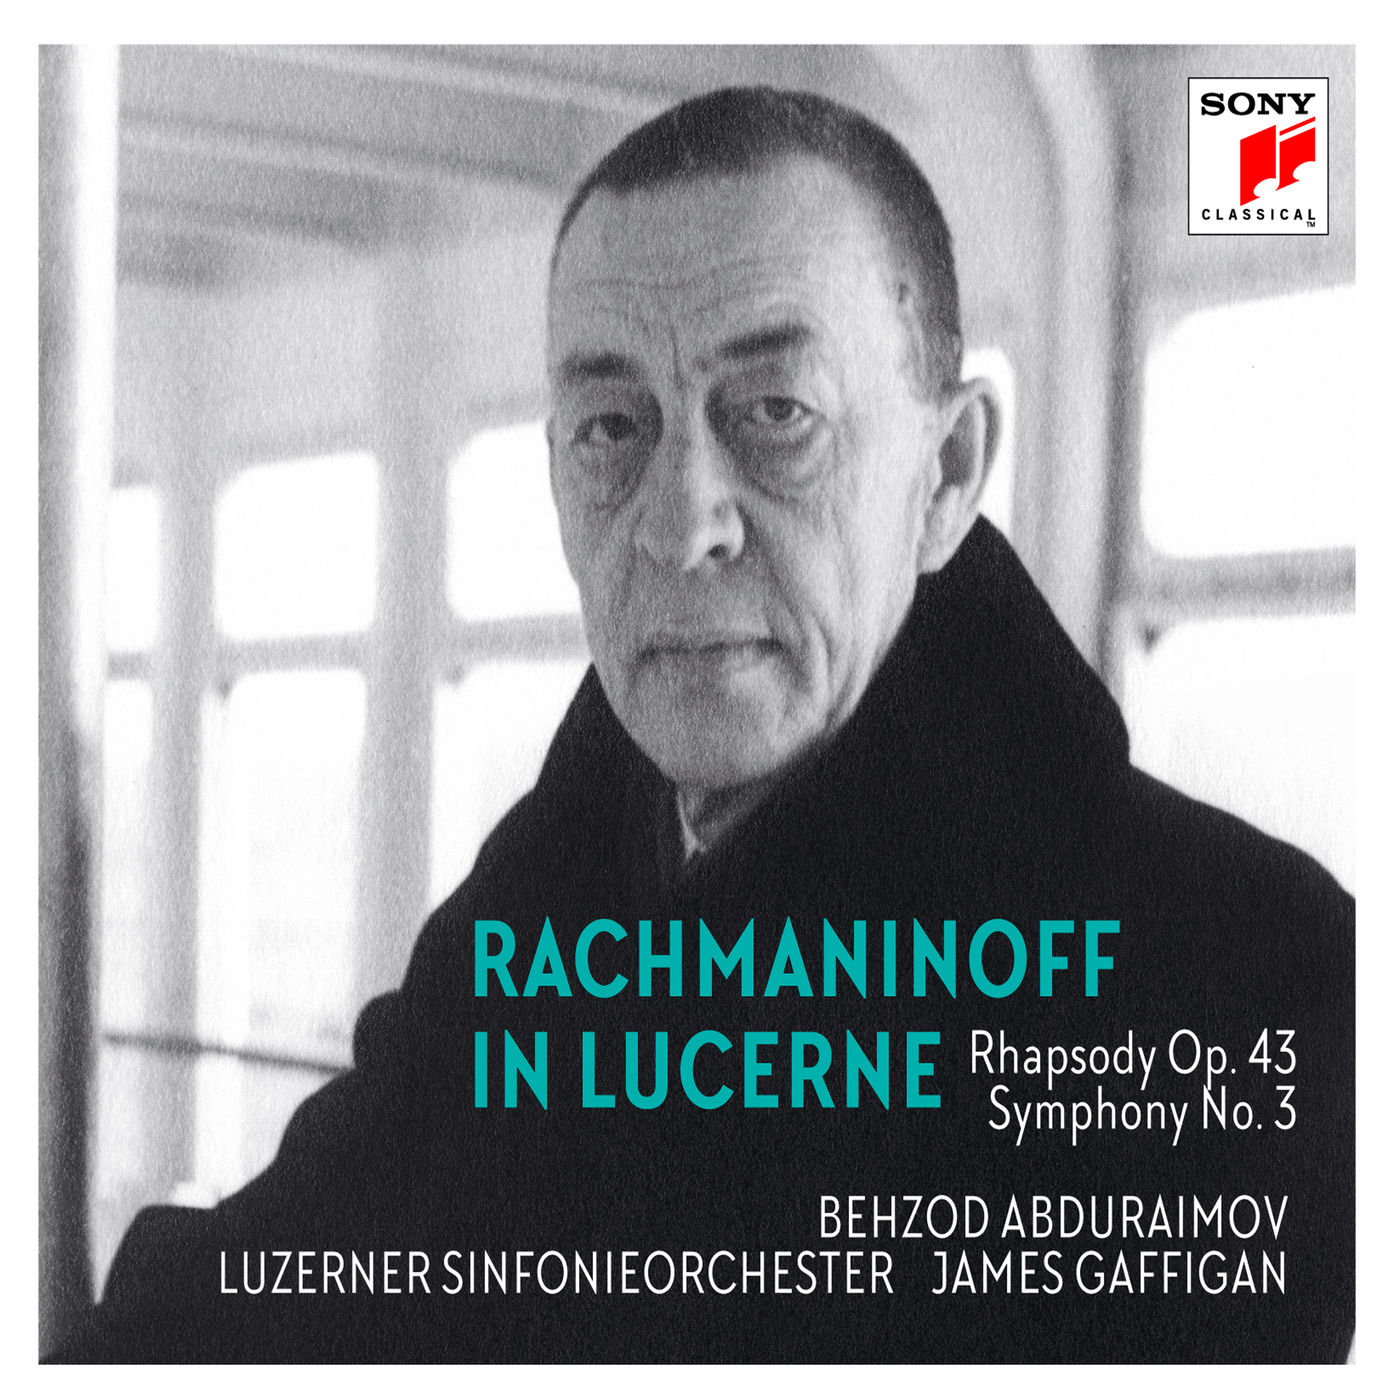 Behzod Abduraimov - Rachmaninoff in Lucerne - Rhapsody on a Theme of Paganini, Symphony No. 3 (2020) [FLAC 24bit/96kHz]